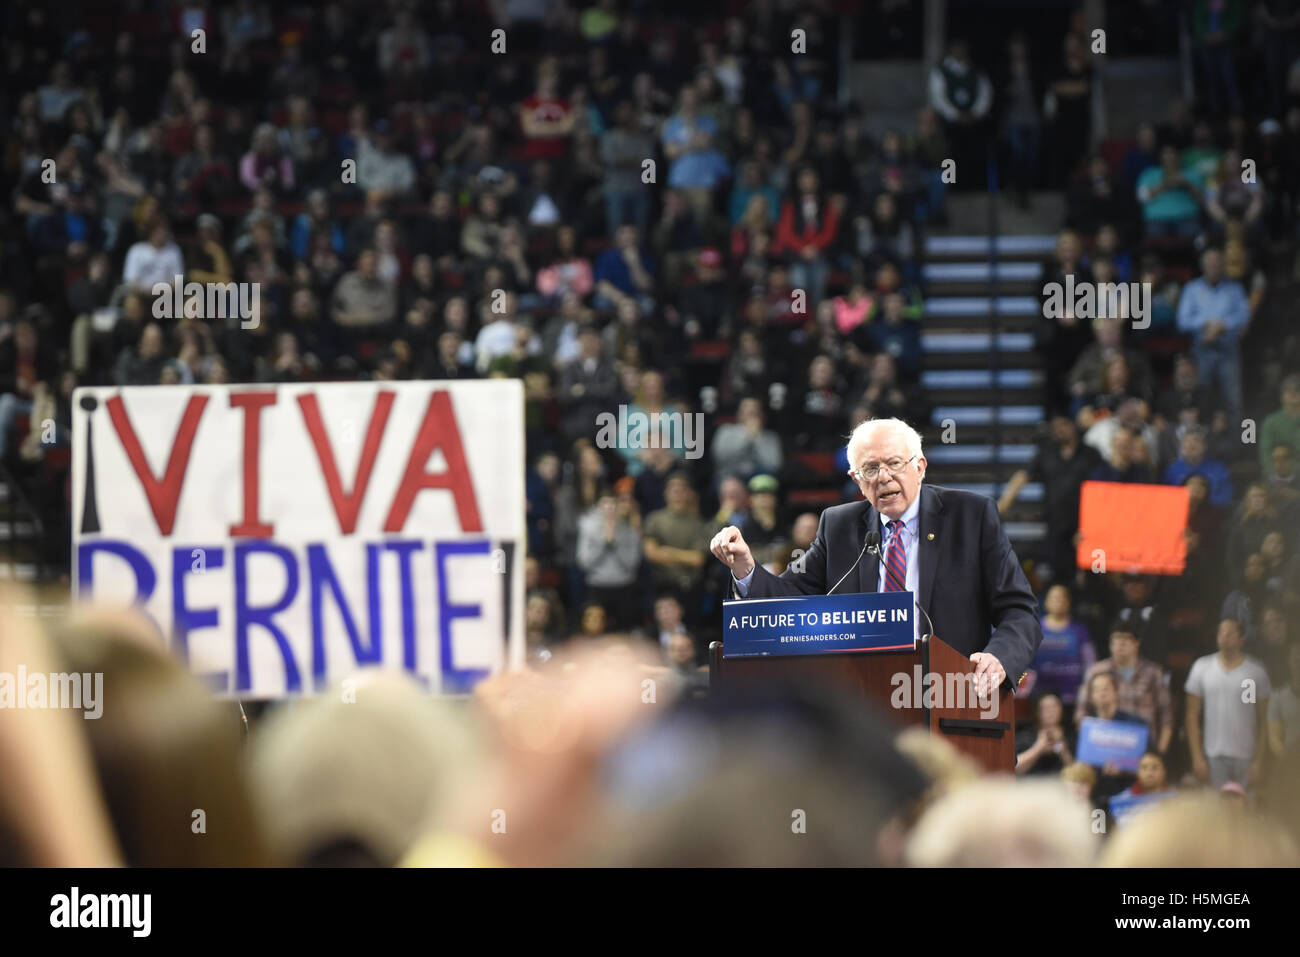 Senator Bernie Sanders befasst sich das Publikum auf eine Zukunft zu glauben In Rally am 20. März 2016 in Seattle, Washington. Stockfoto